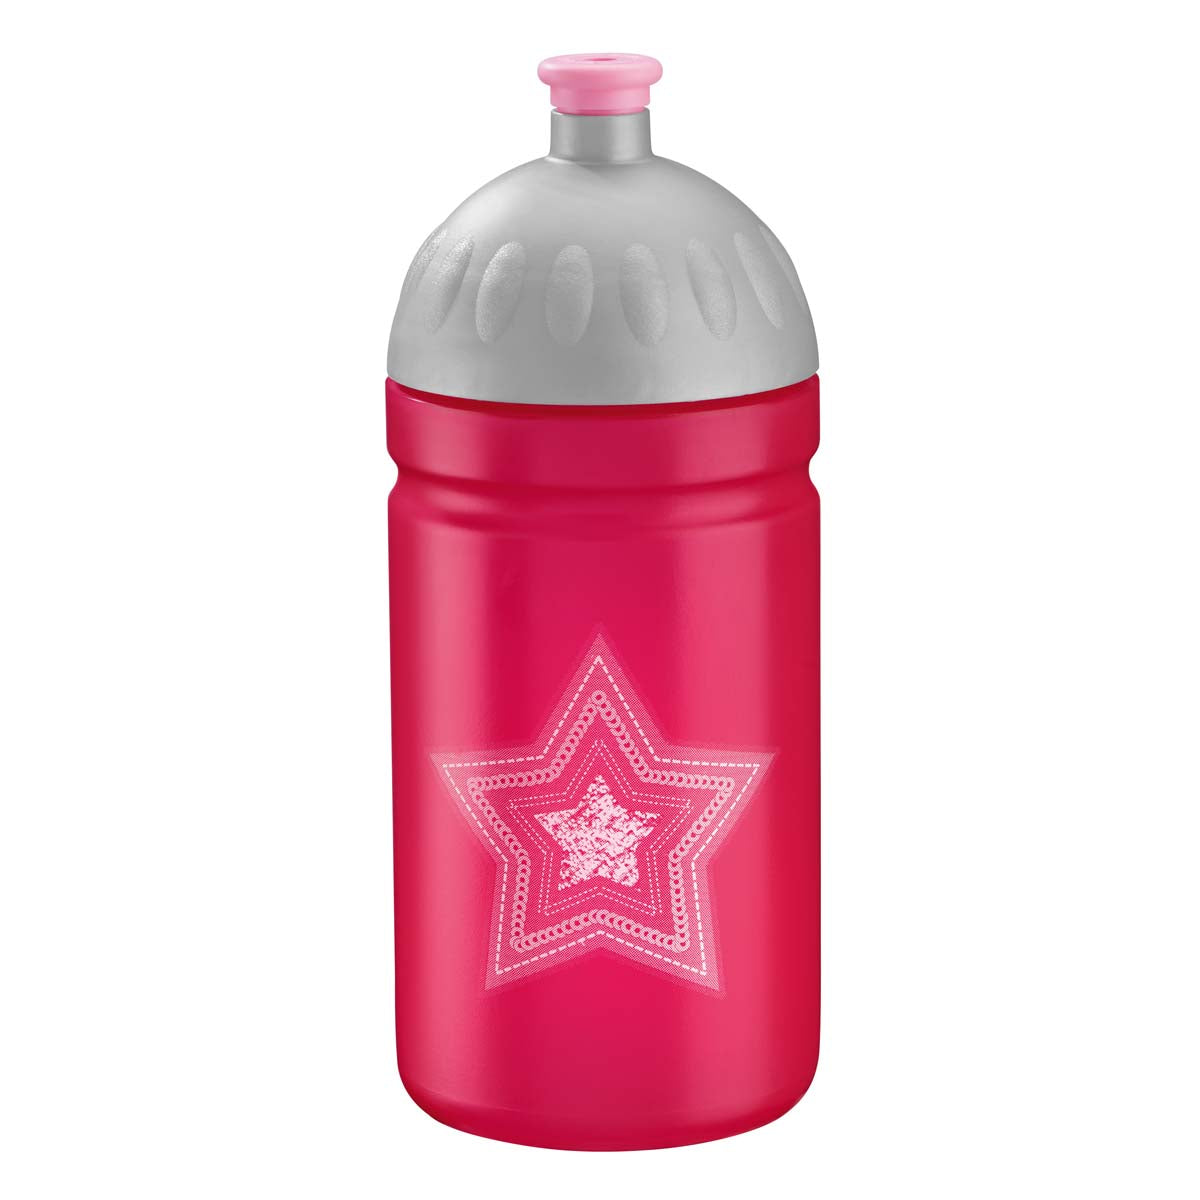 Trinkflaschen Kunststoff ( BPA Frei ) & Trinkflaschen Edelstahl - Alle Farben hier zu finden